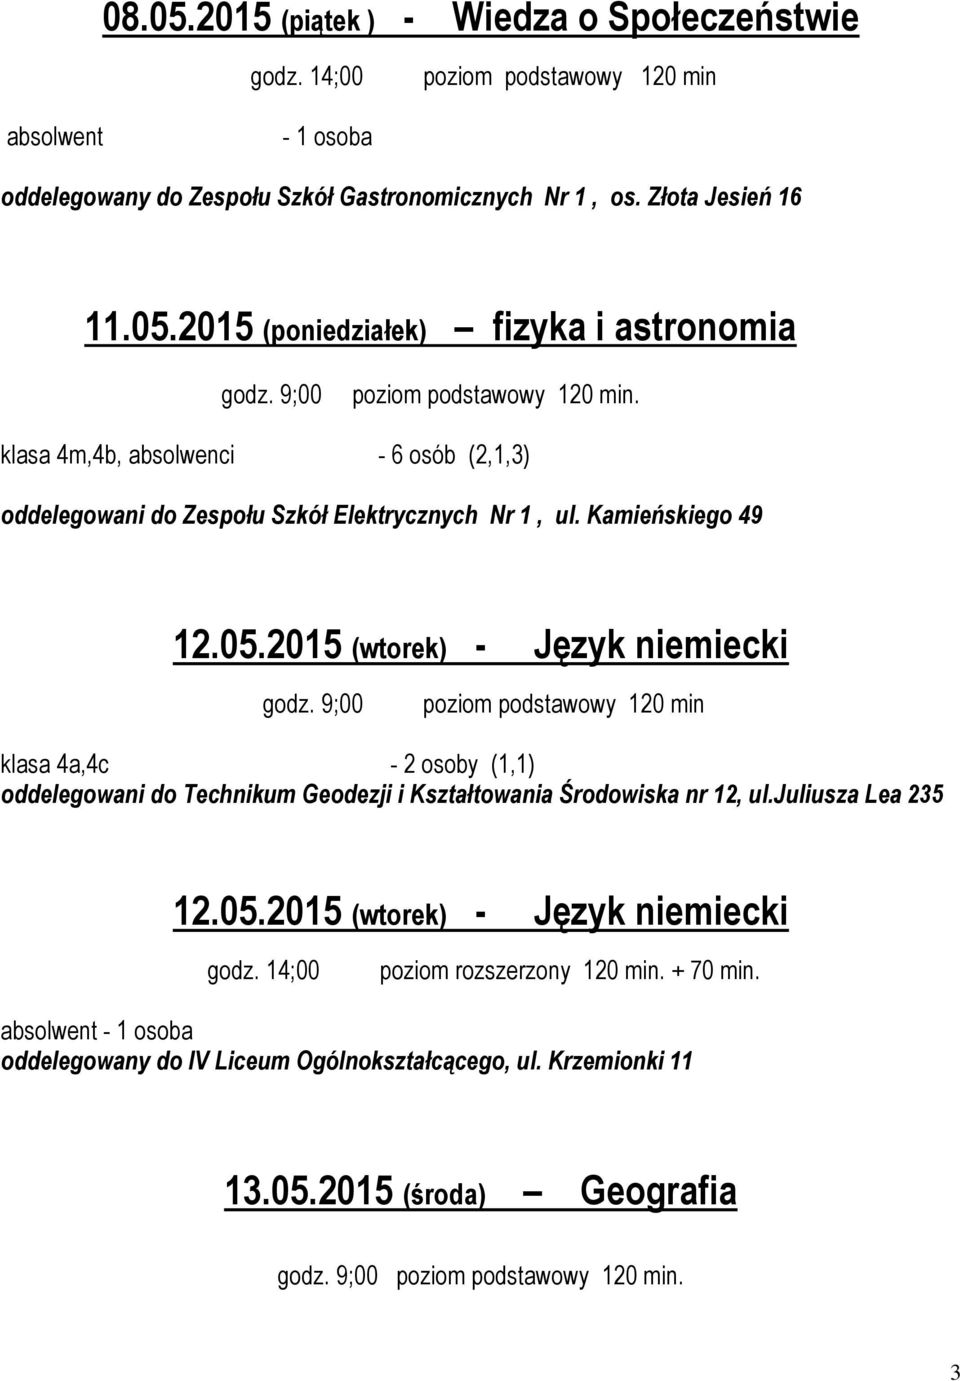 2015 (wtorek) - Język niemiecki klasa 4a,4c - 2 osoby (1,1) oddelegowani do Technikum Geodezji i Kształtowania Środowiska nr 12, ul.juliusza Lea 235 12.05.